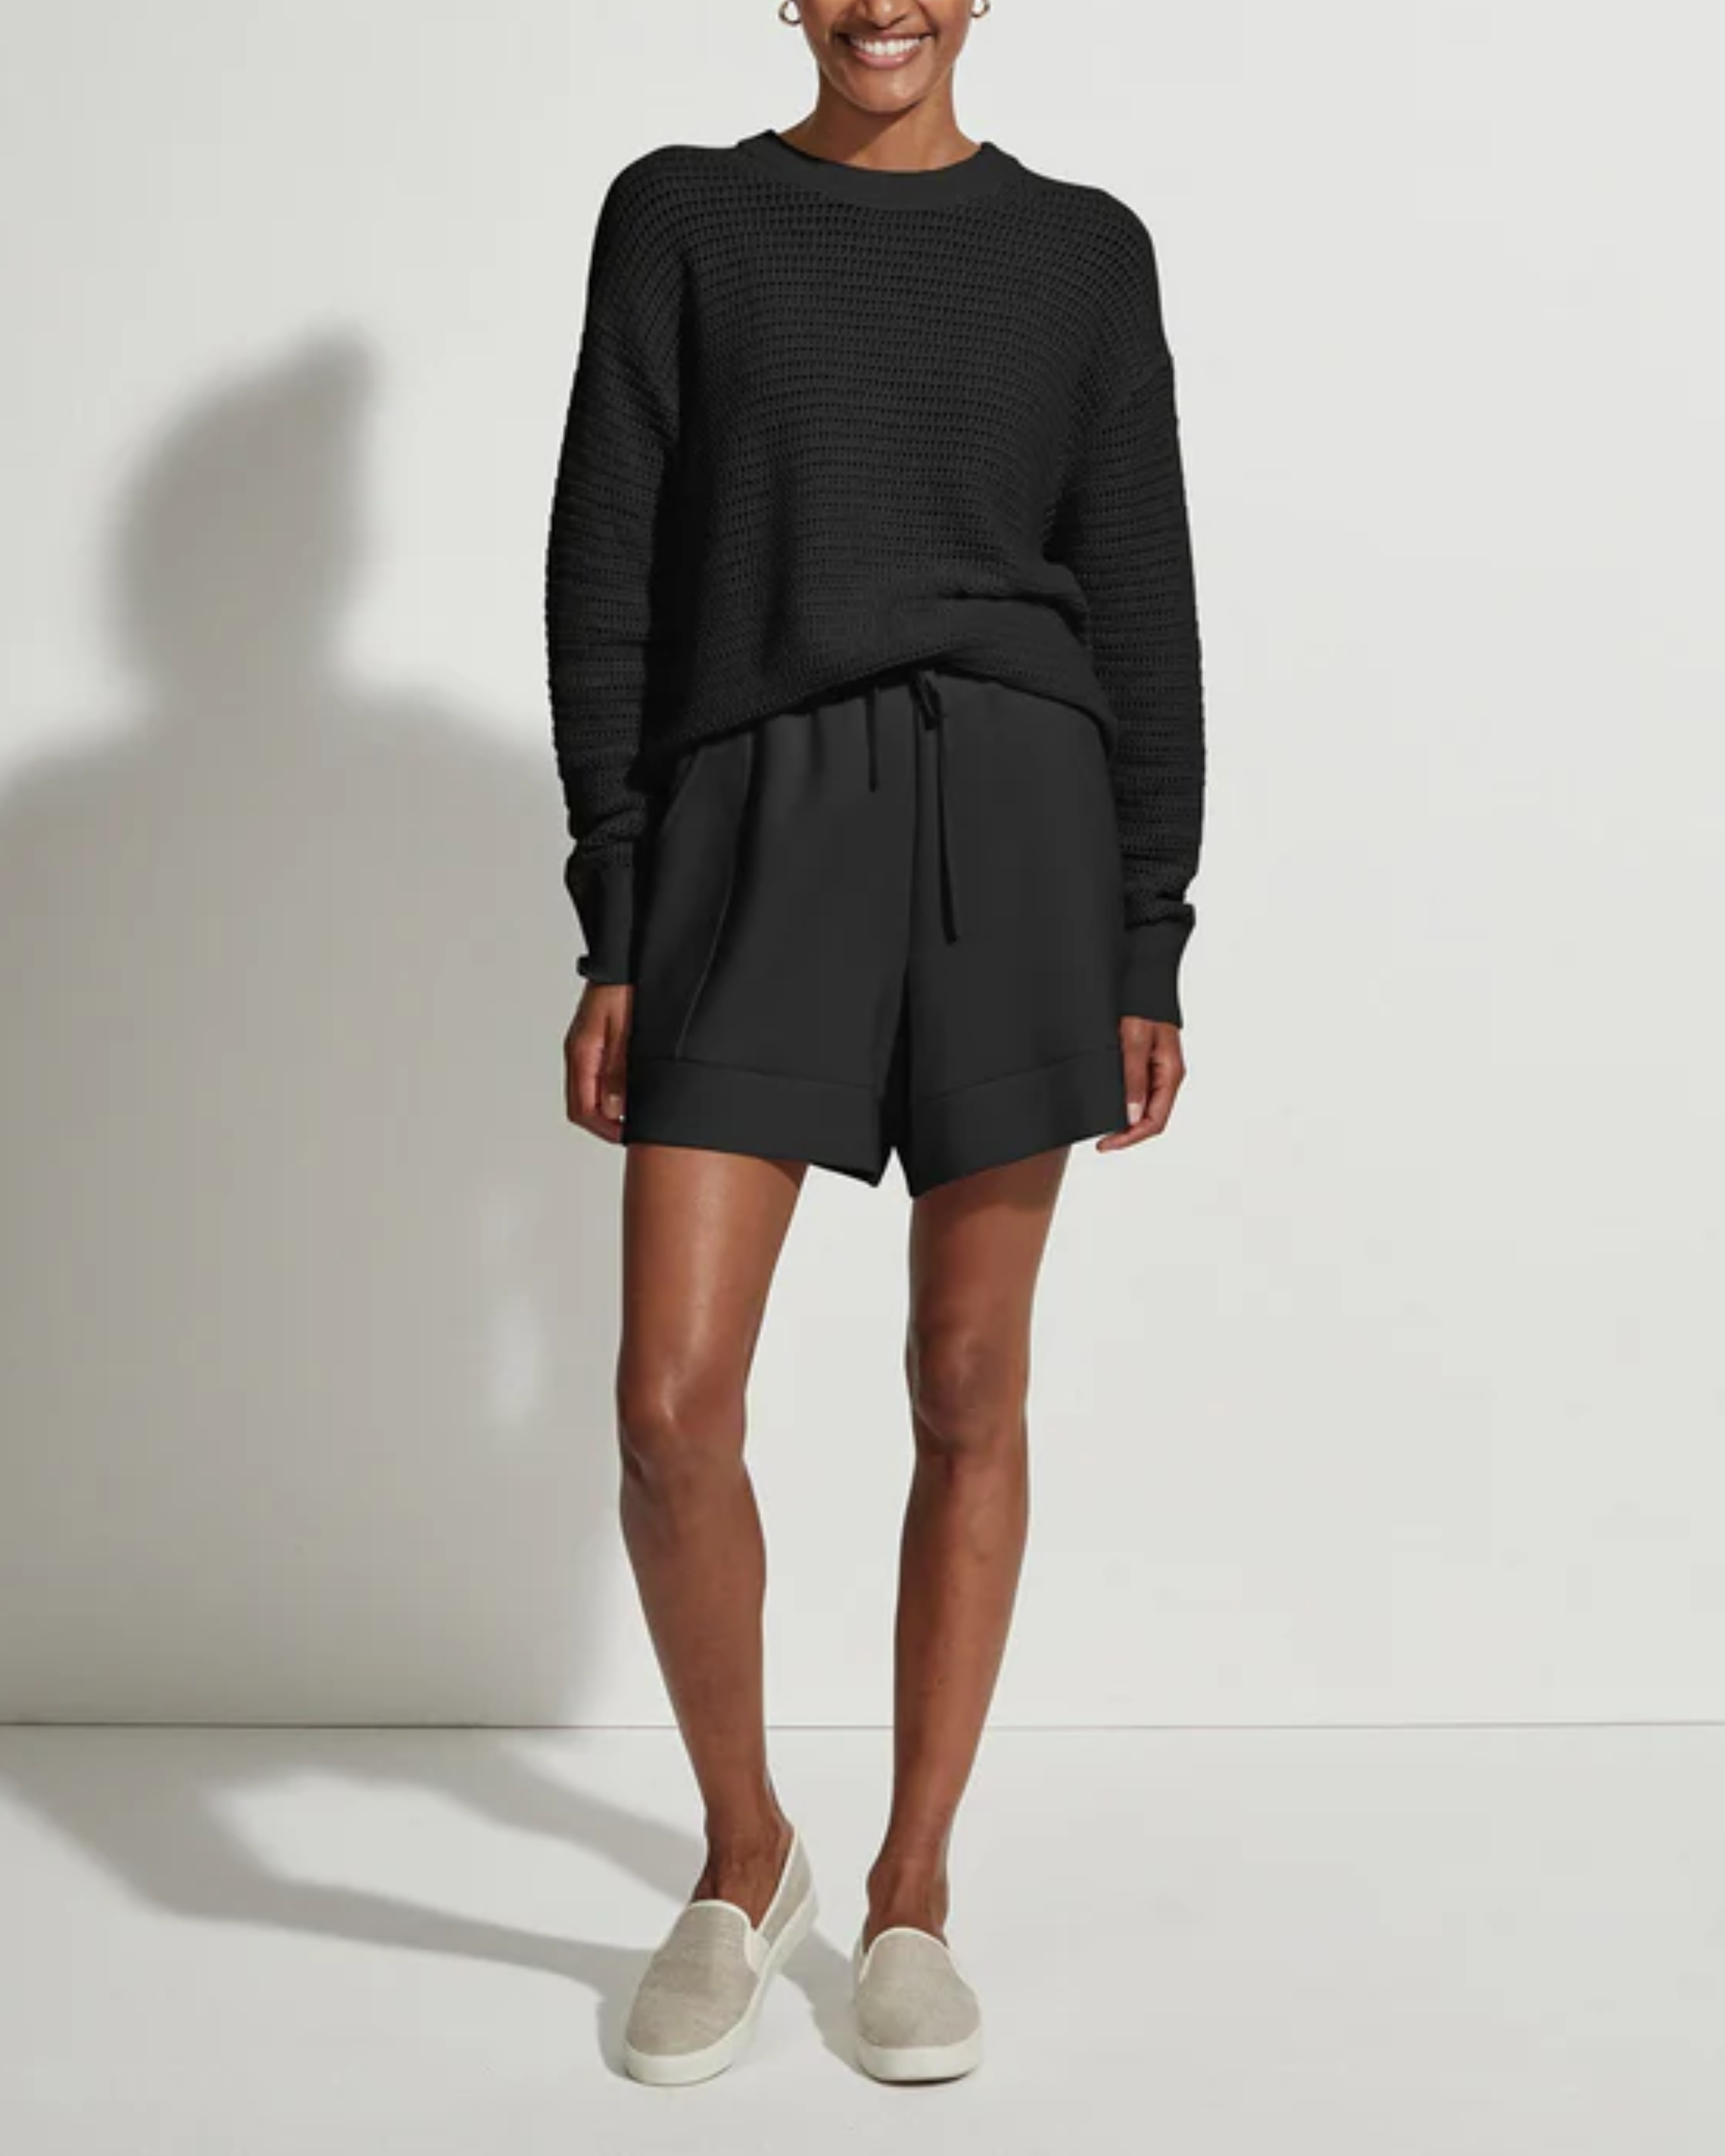 Varley Kershaw Sweatshirt in Black